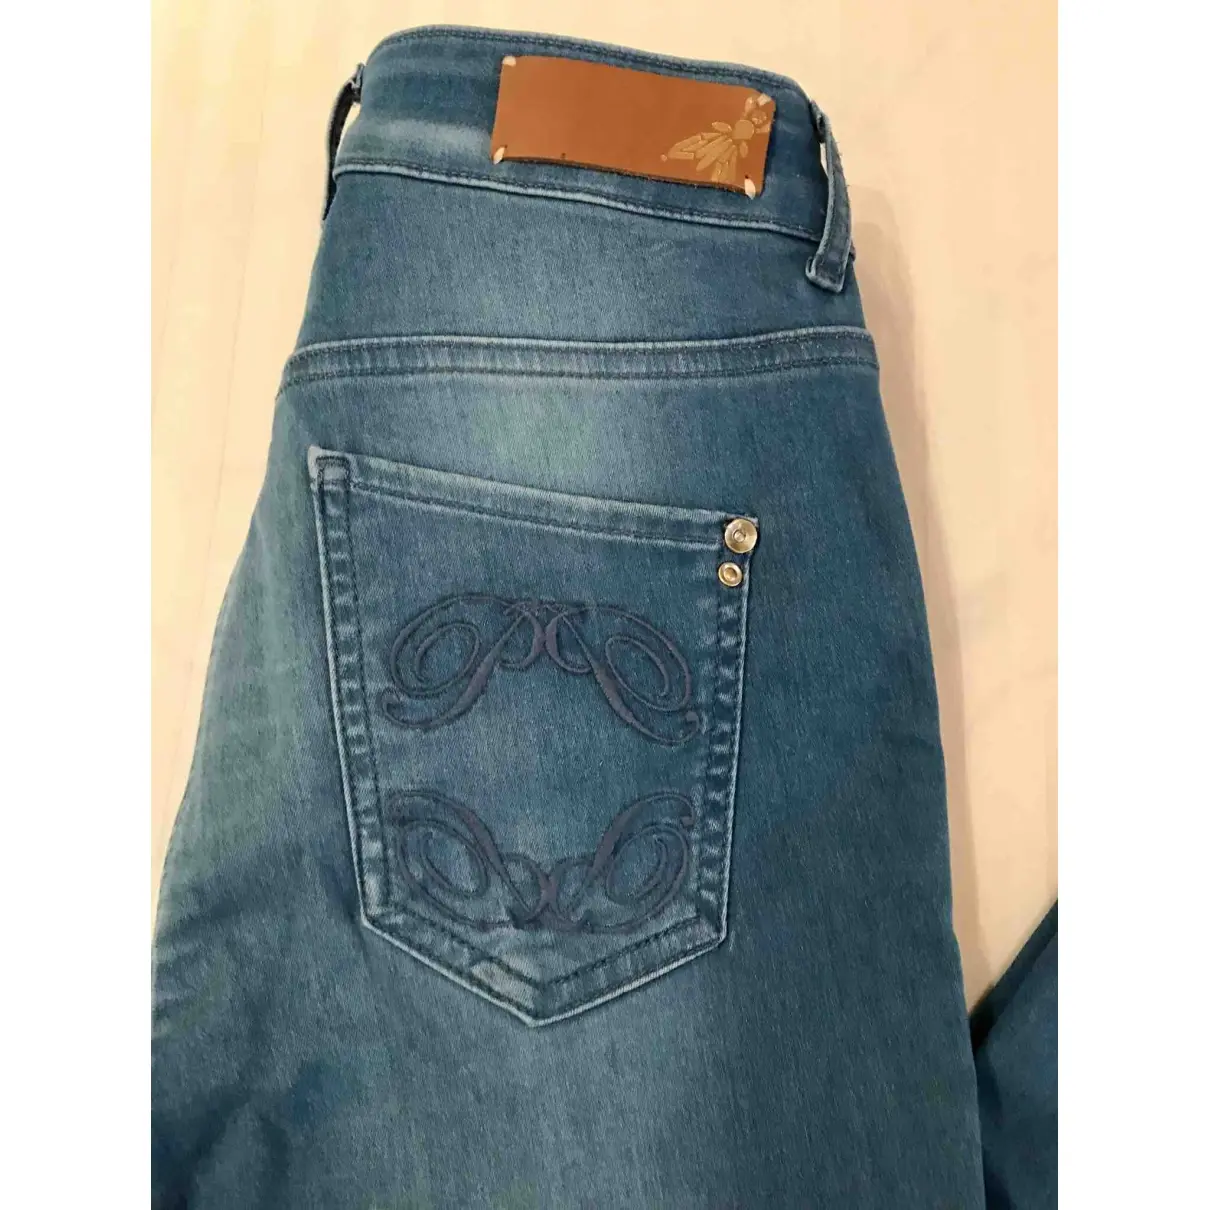 Patrizia Pepe Slim jeans for sale